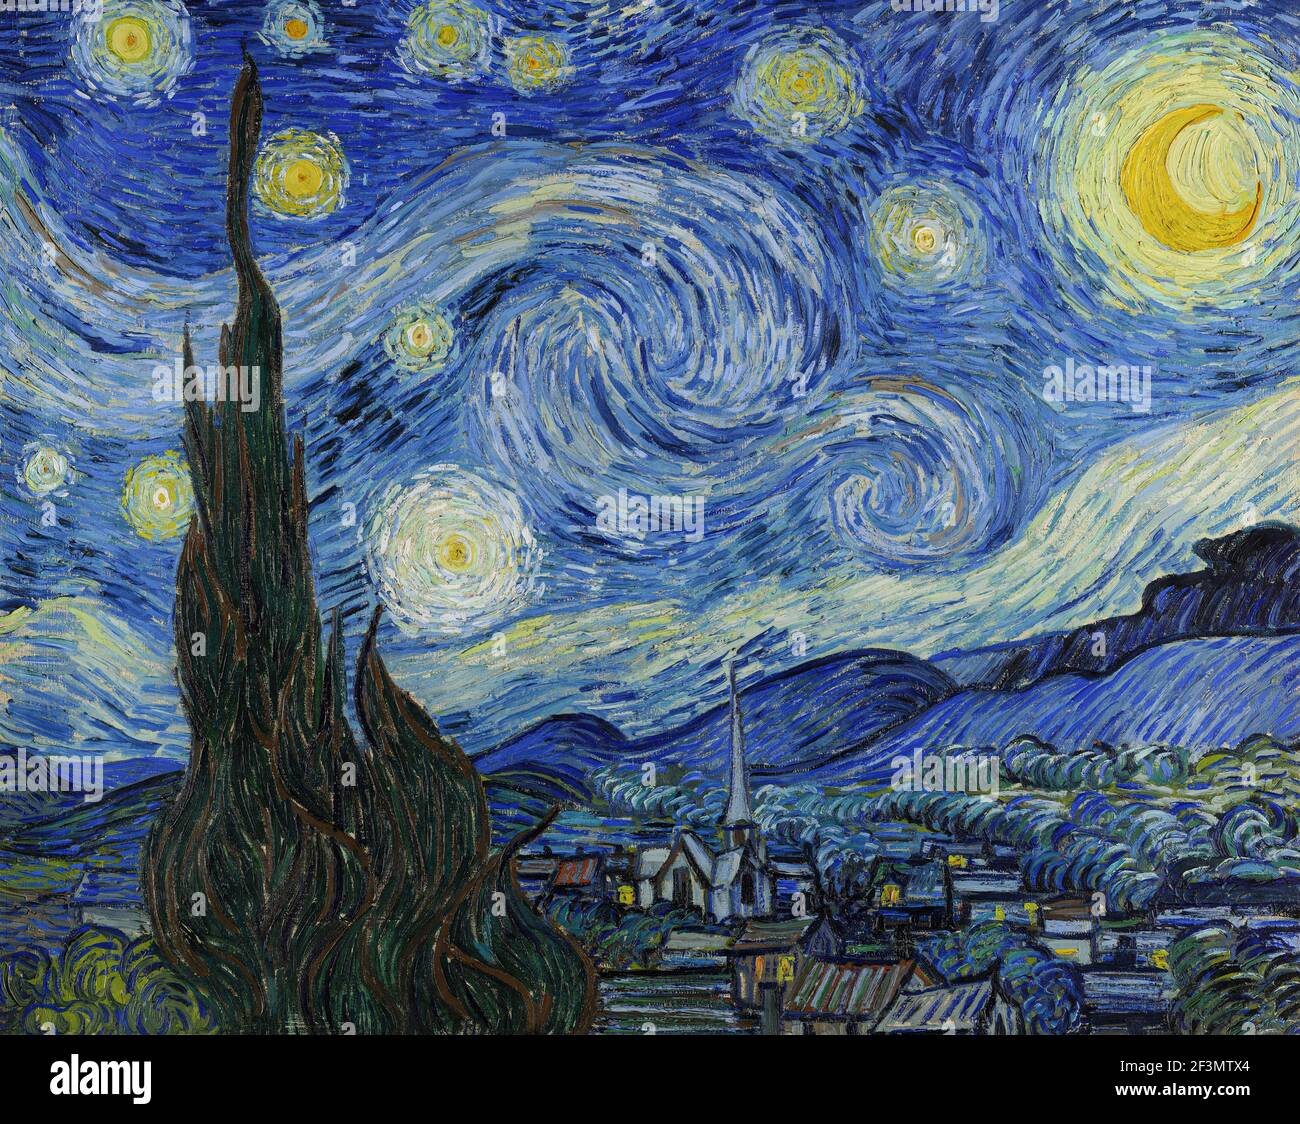 Vincent van Gogh, (1853-1890) The Starry Night, 1889, huile sur toile. Musée d'Art moderne, New York. Banque D'Images